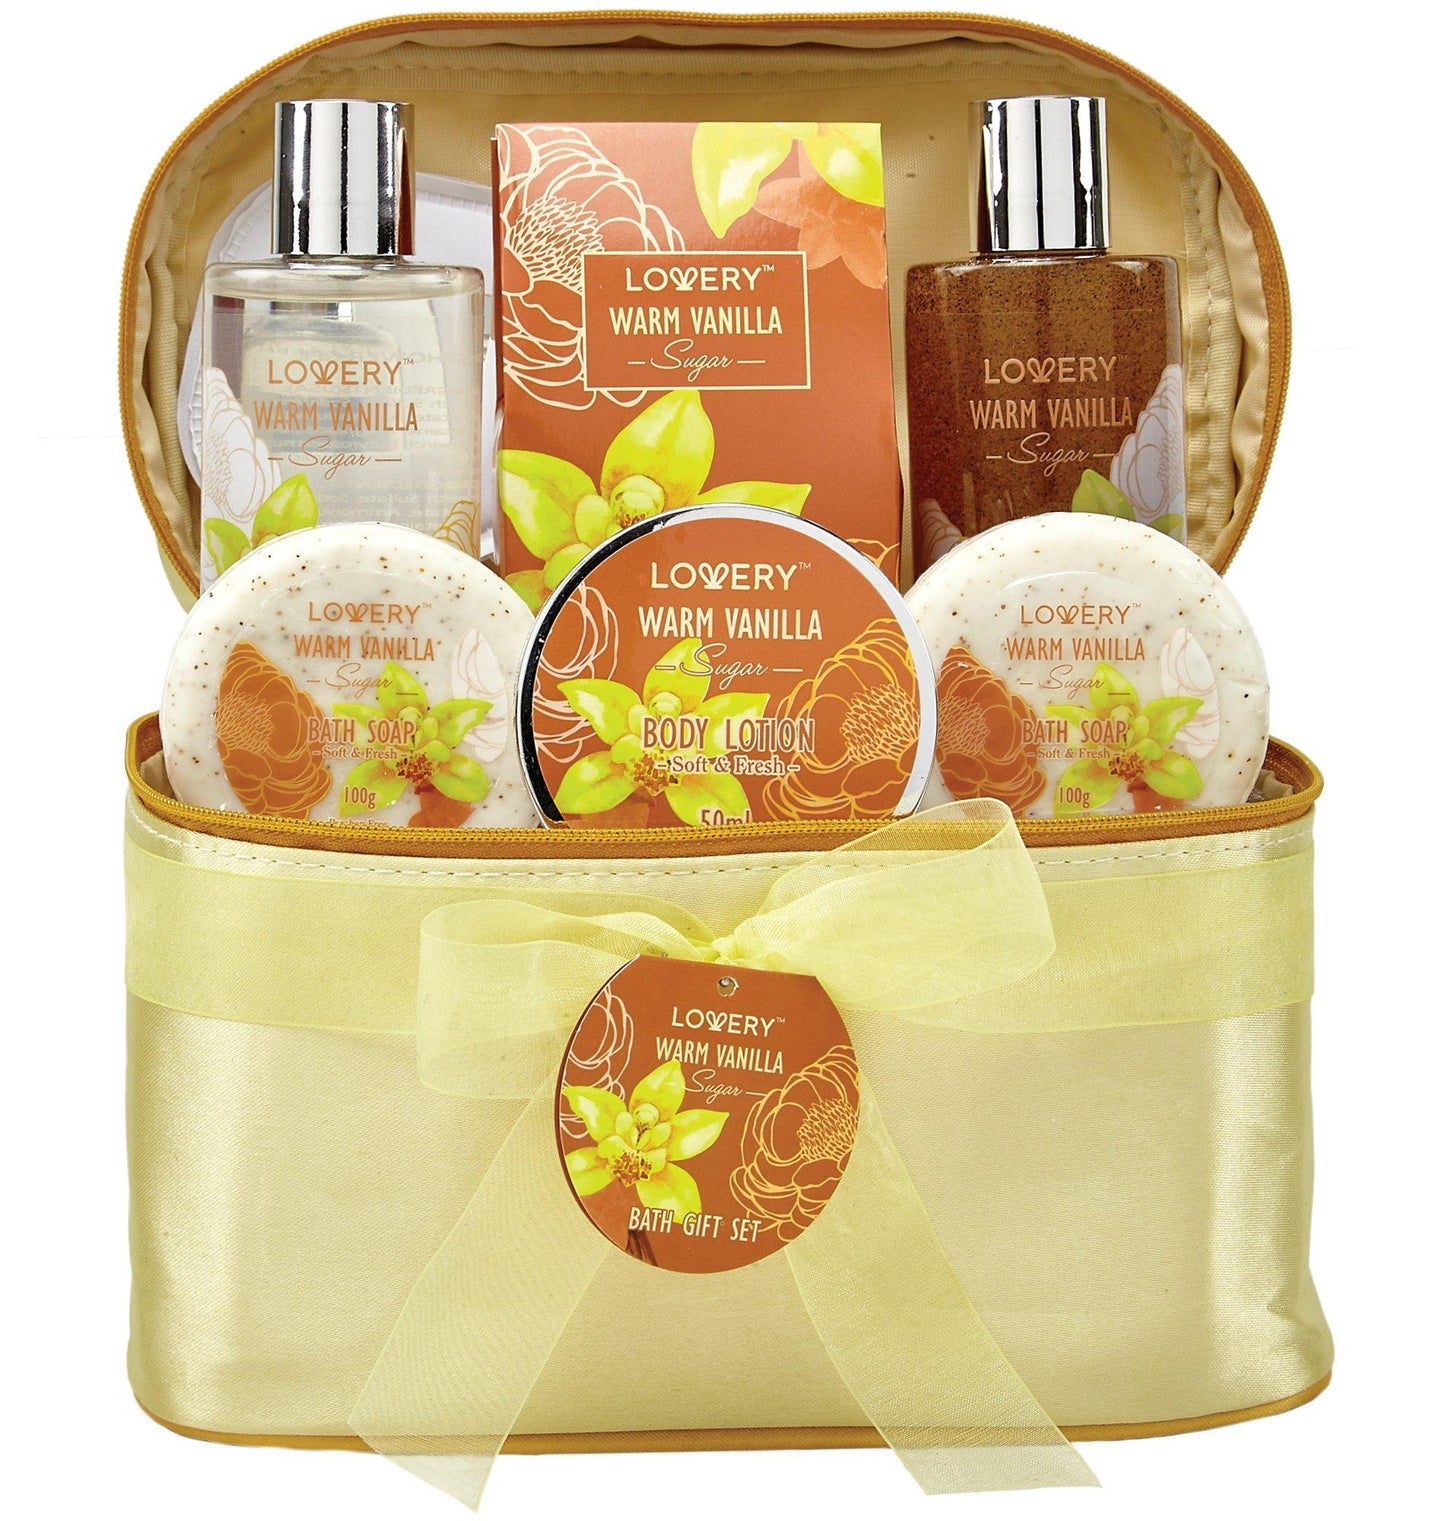 Warm Vanilla Sugar Spa Bath and Body Set in a Cosmetic Bag - Lovery